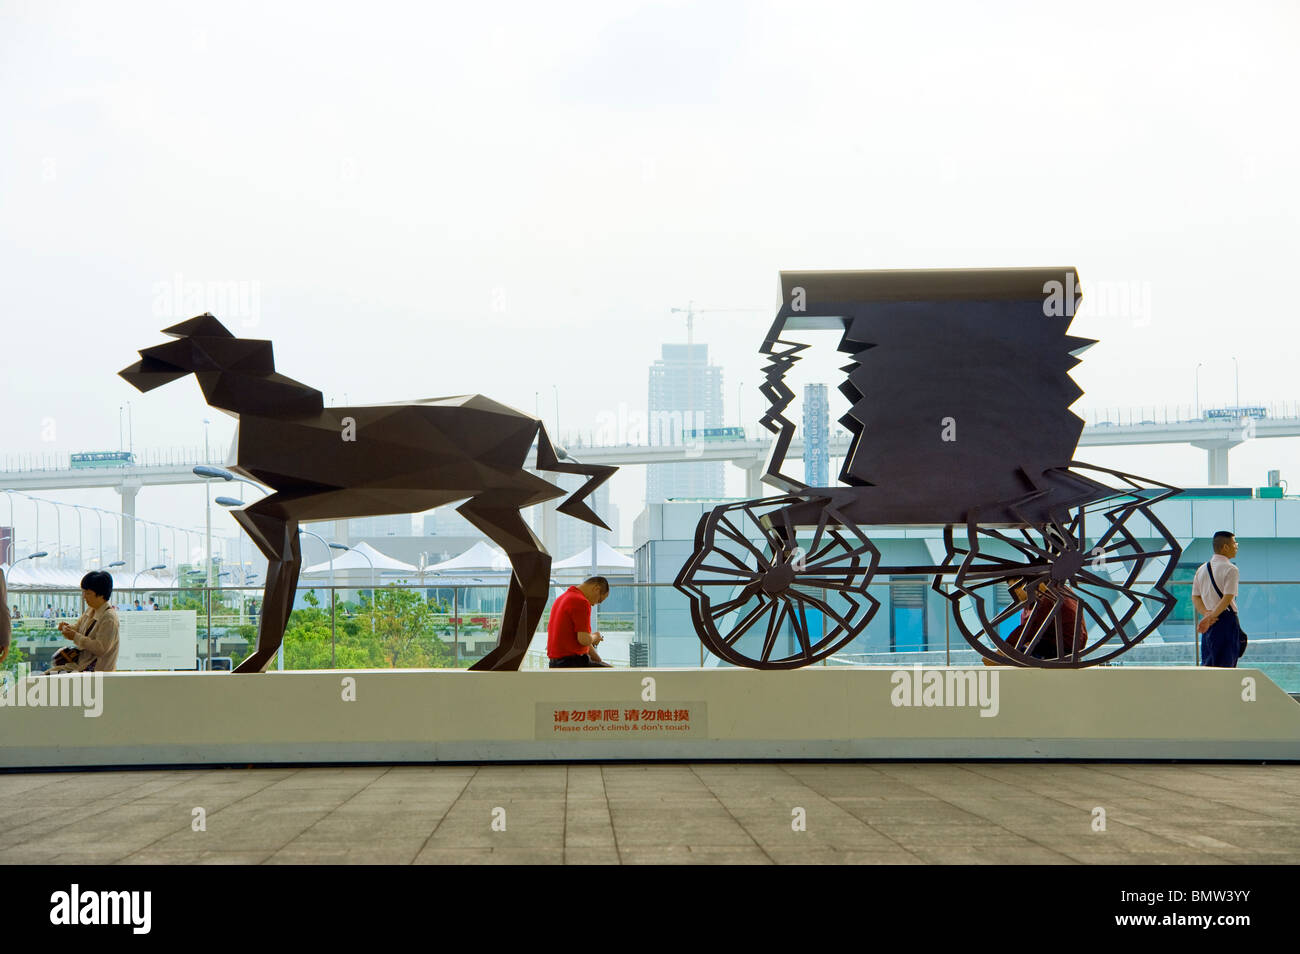 EXPO 2010 Shanghai China obra de arte estatua óxido de hierro oxidado de los tiempos modernos el contraste opuesto entrenador correo stagecoach nuevos y modernos Foto de stock